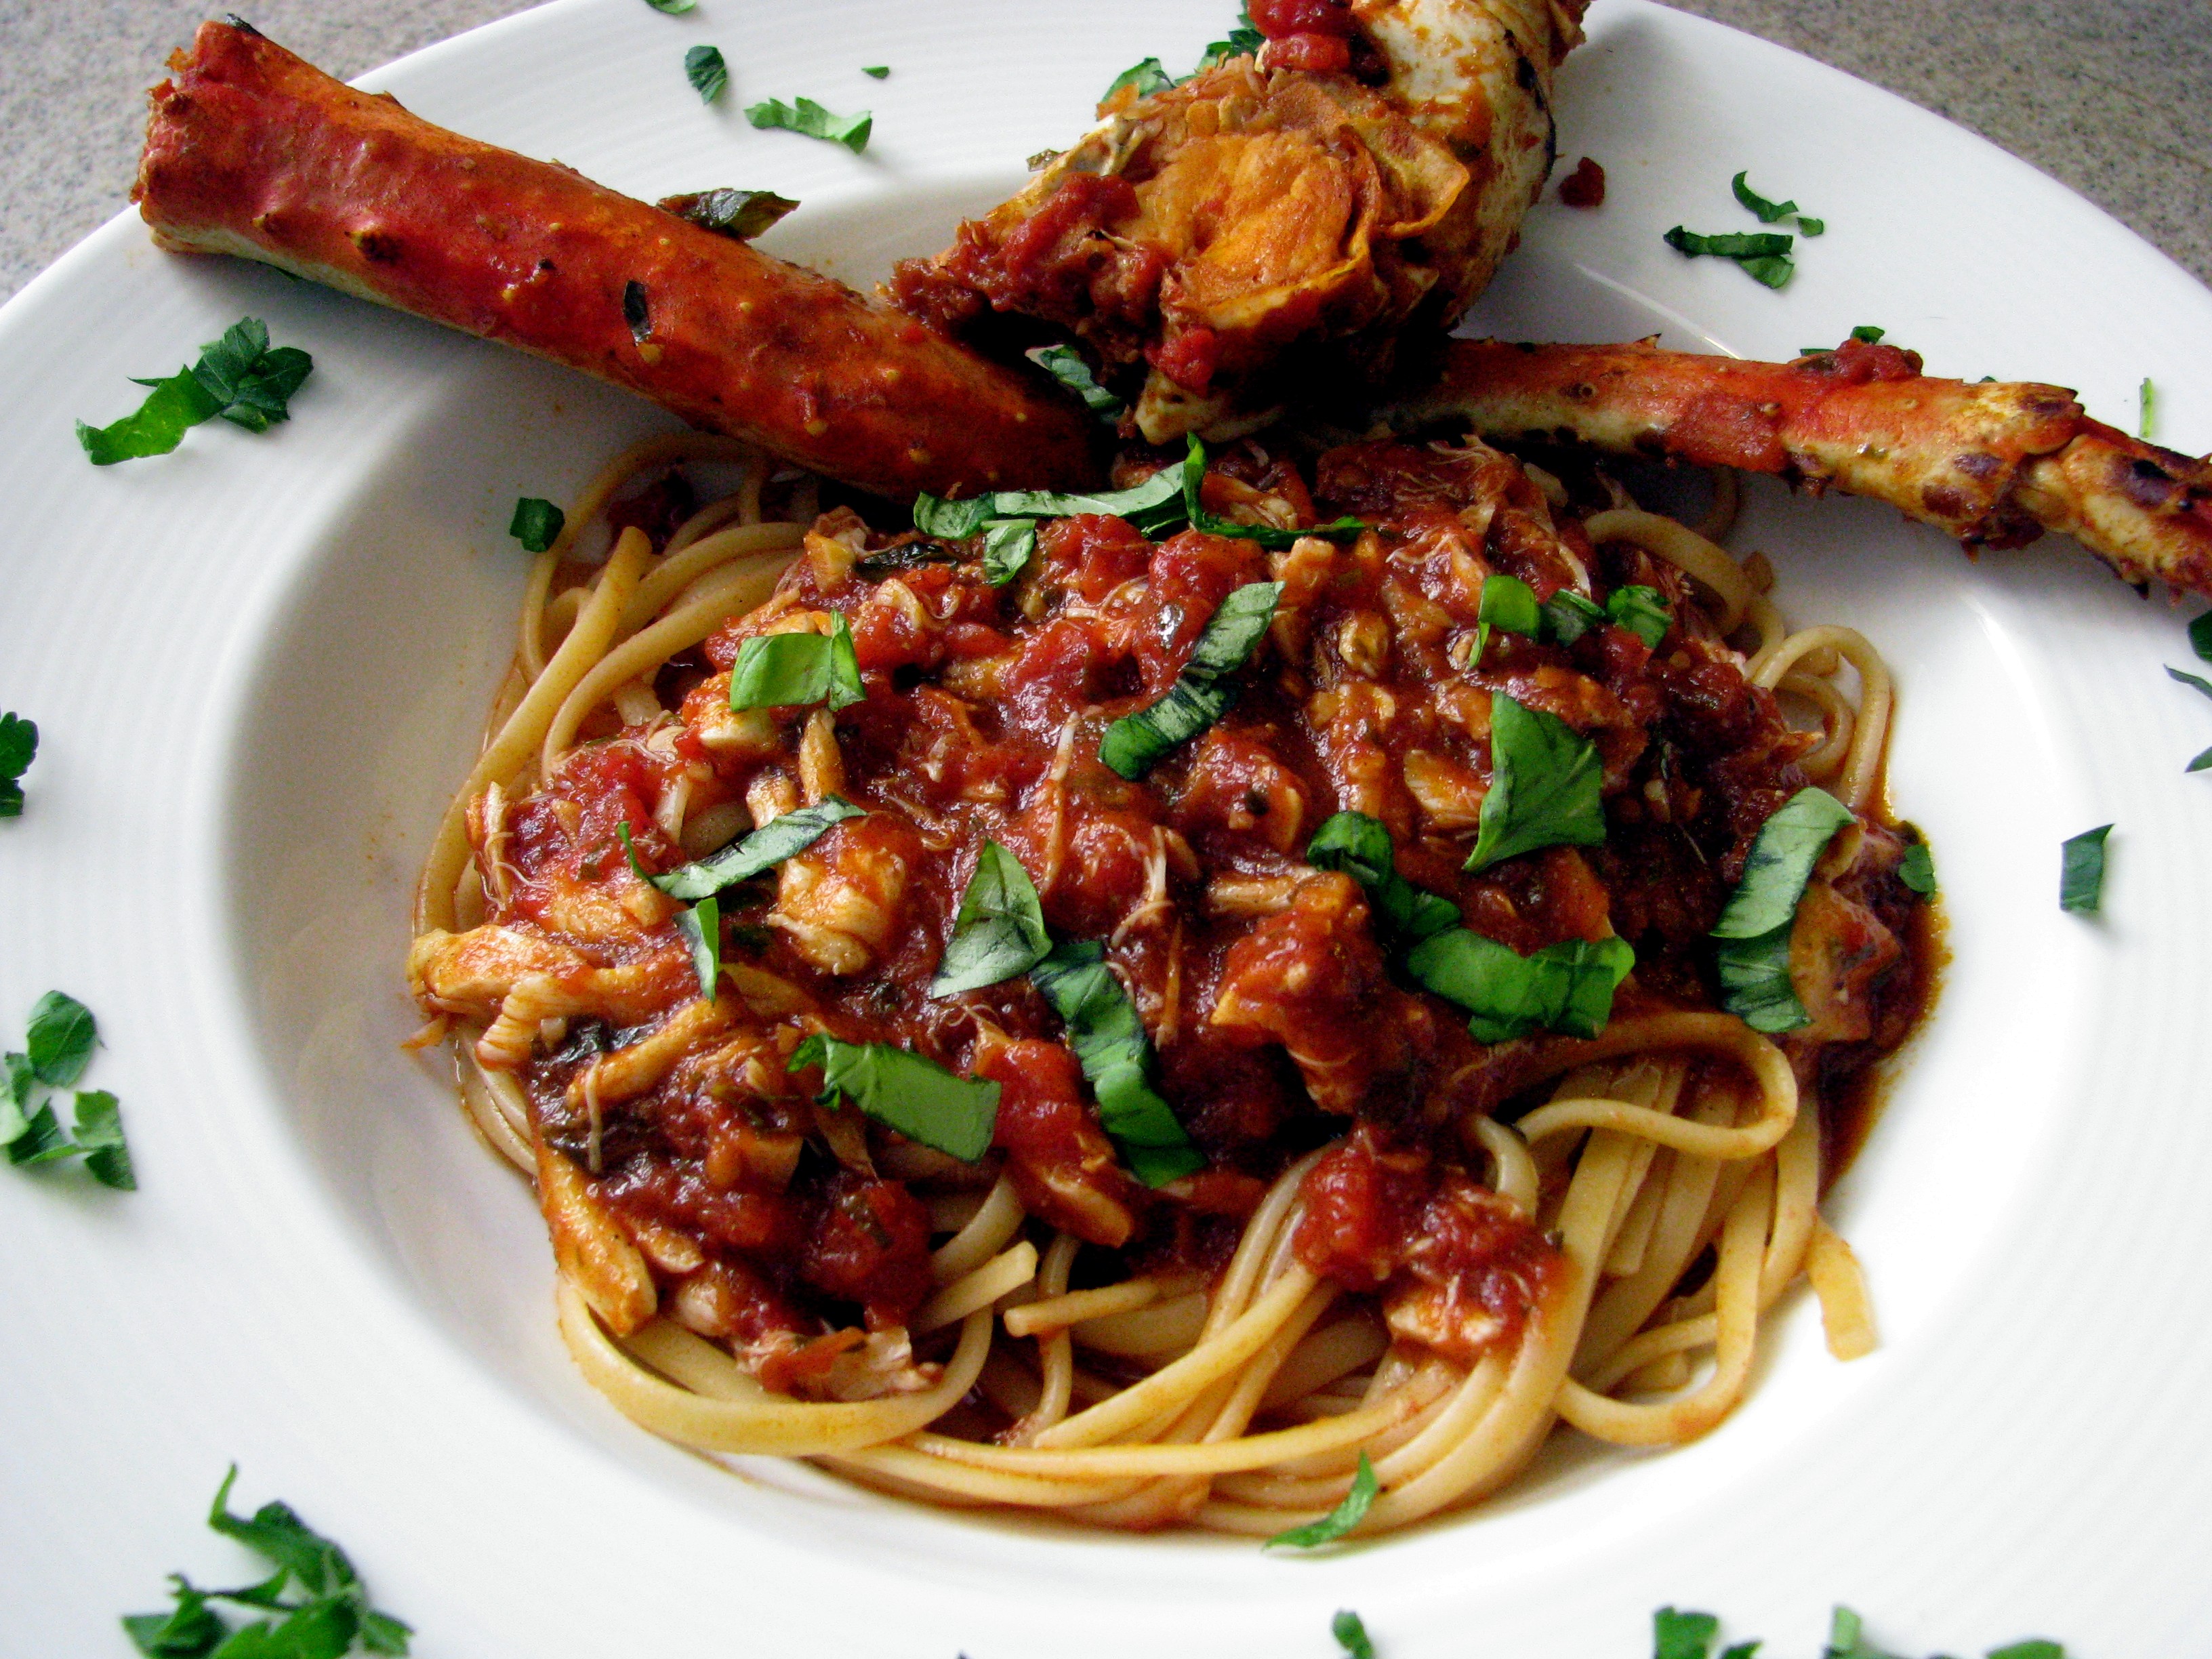 spaghetti e salsa di granchio (spaghetti with crab sauce)